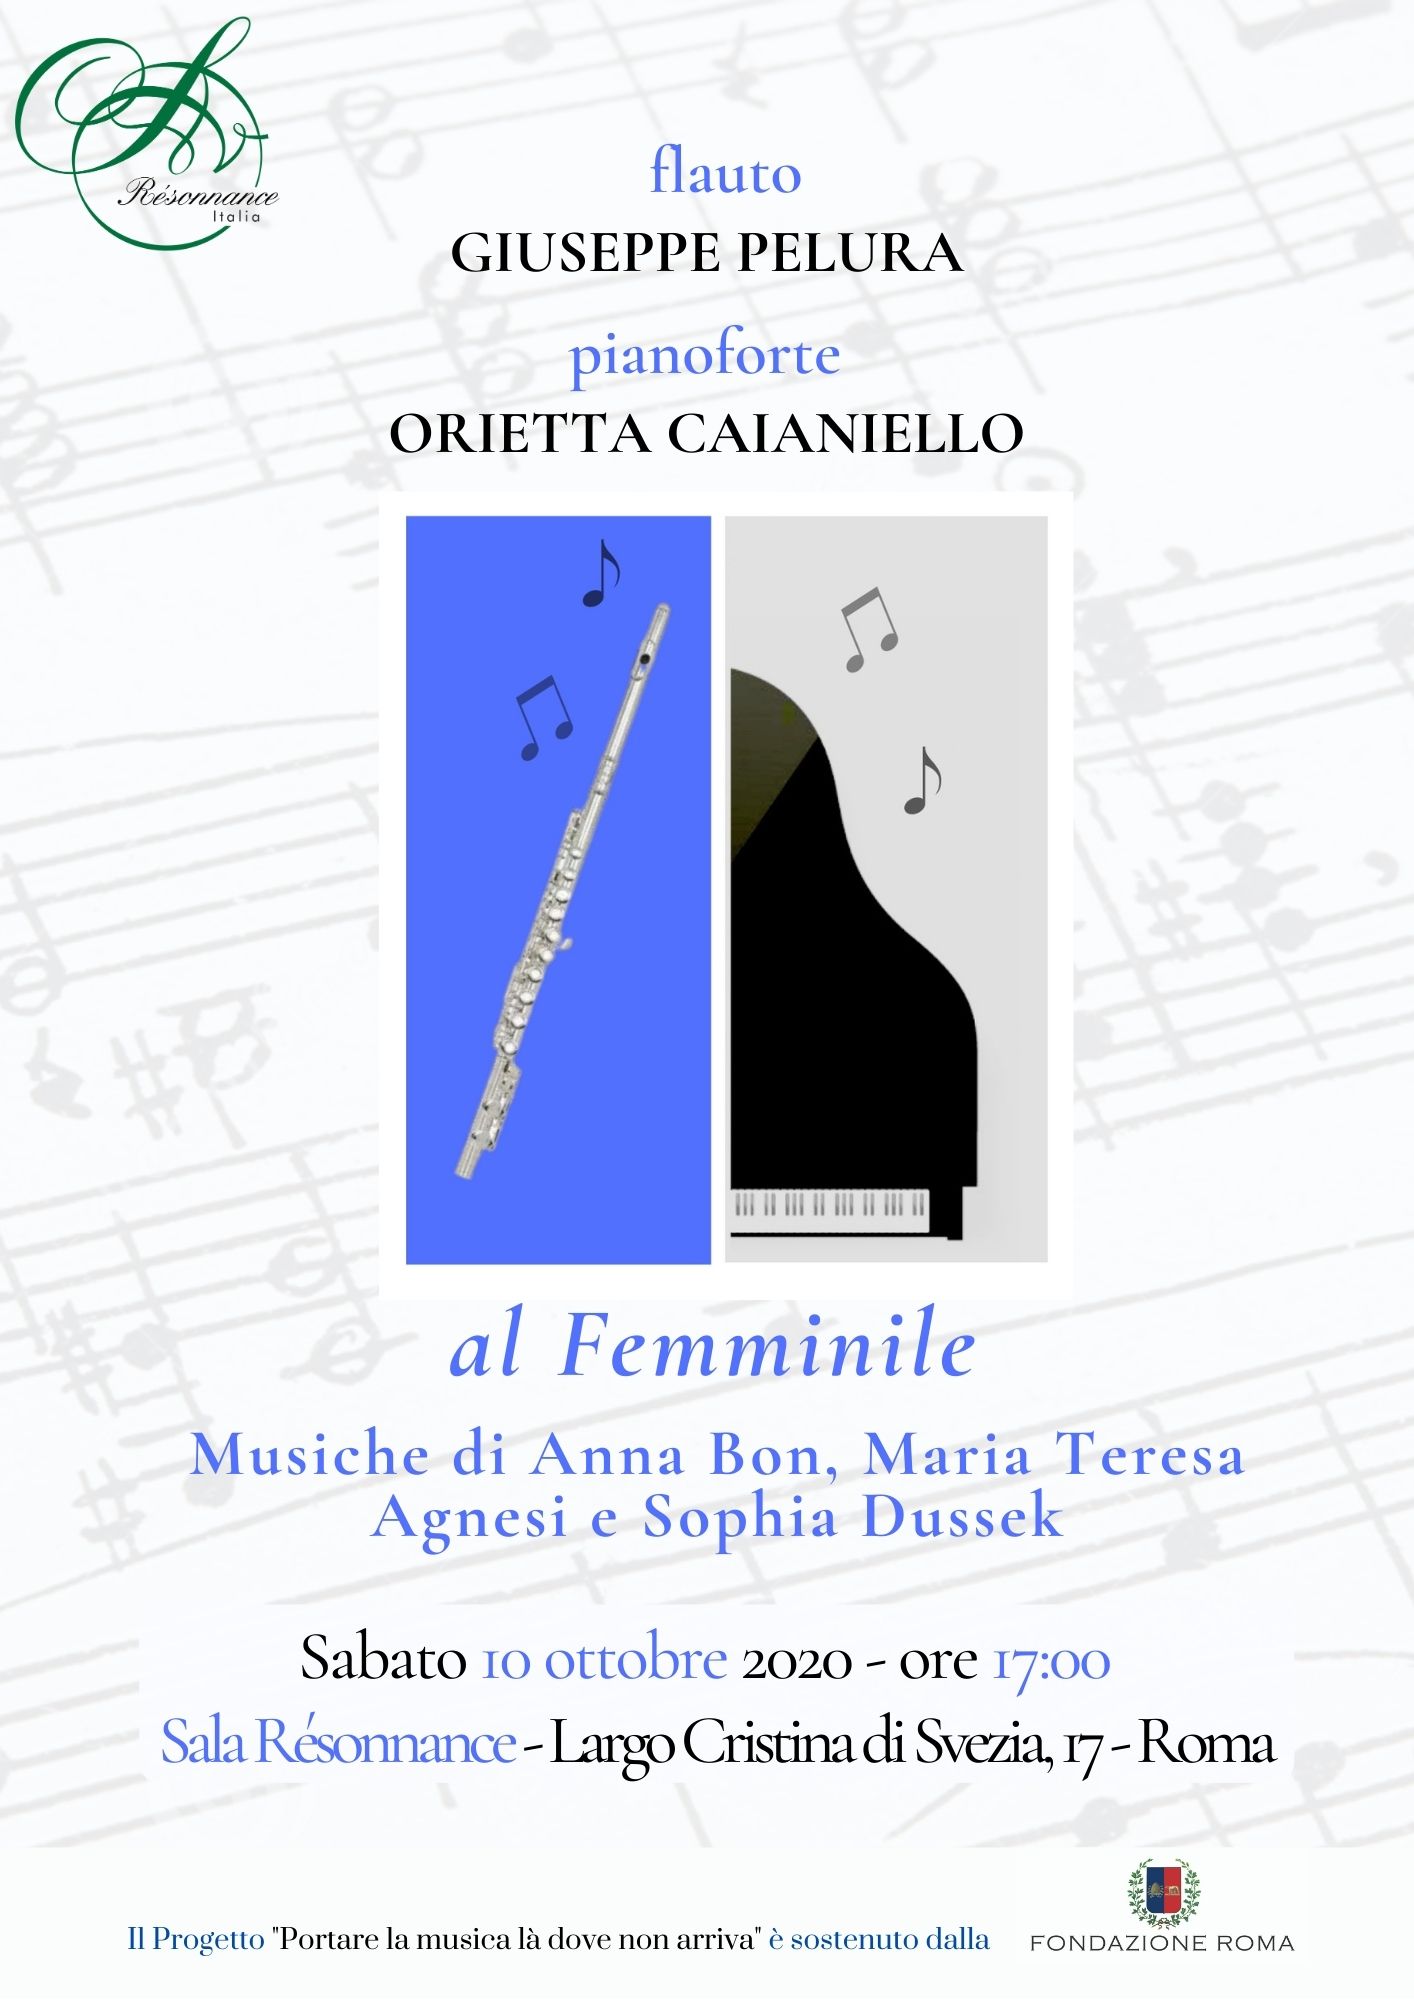 "al Femminile". Concerto di Orietta Caianiello e Giuseppe Pelura